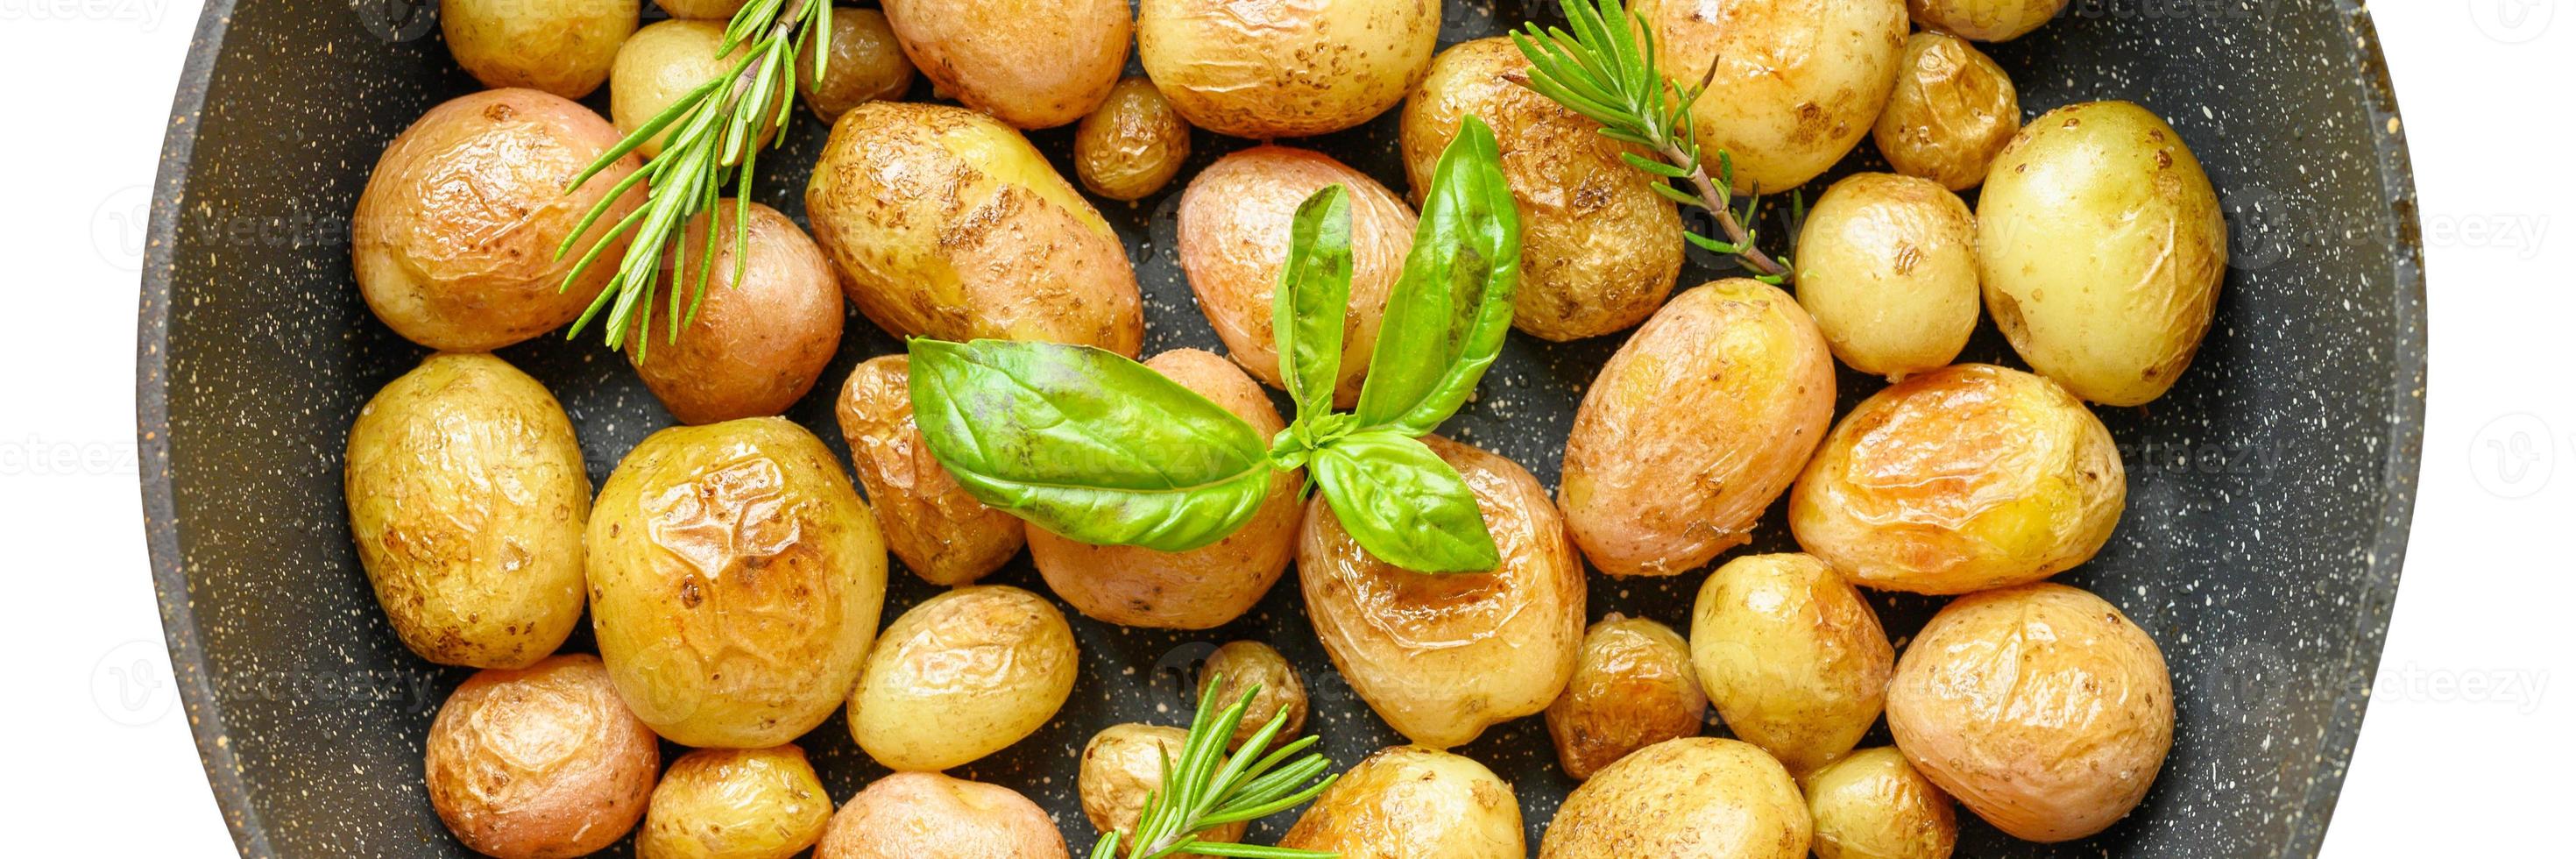 gouden geroosterde aardappelen in de schil foto